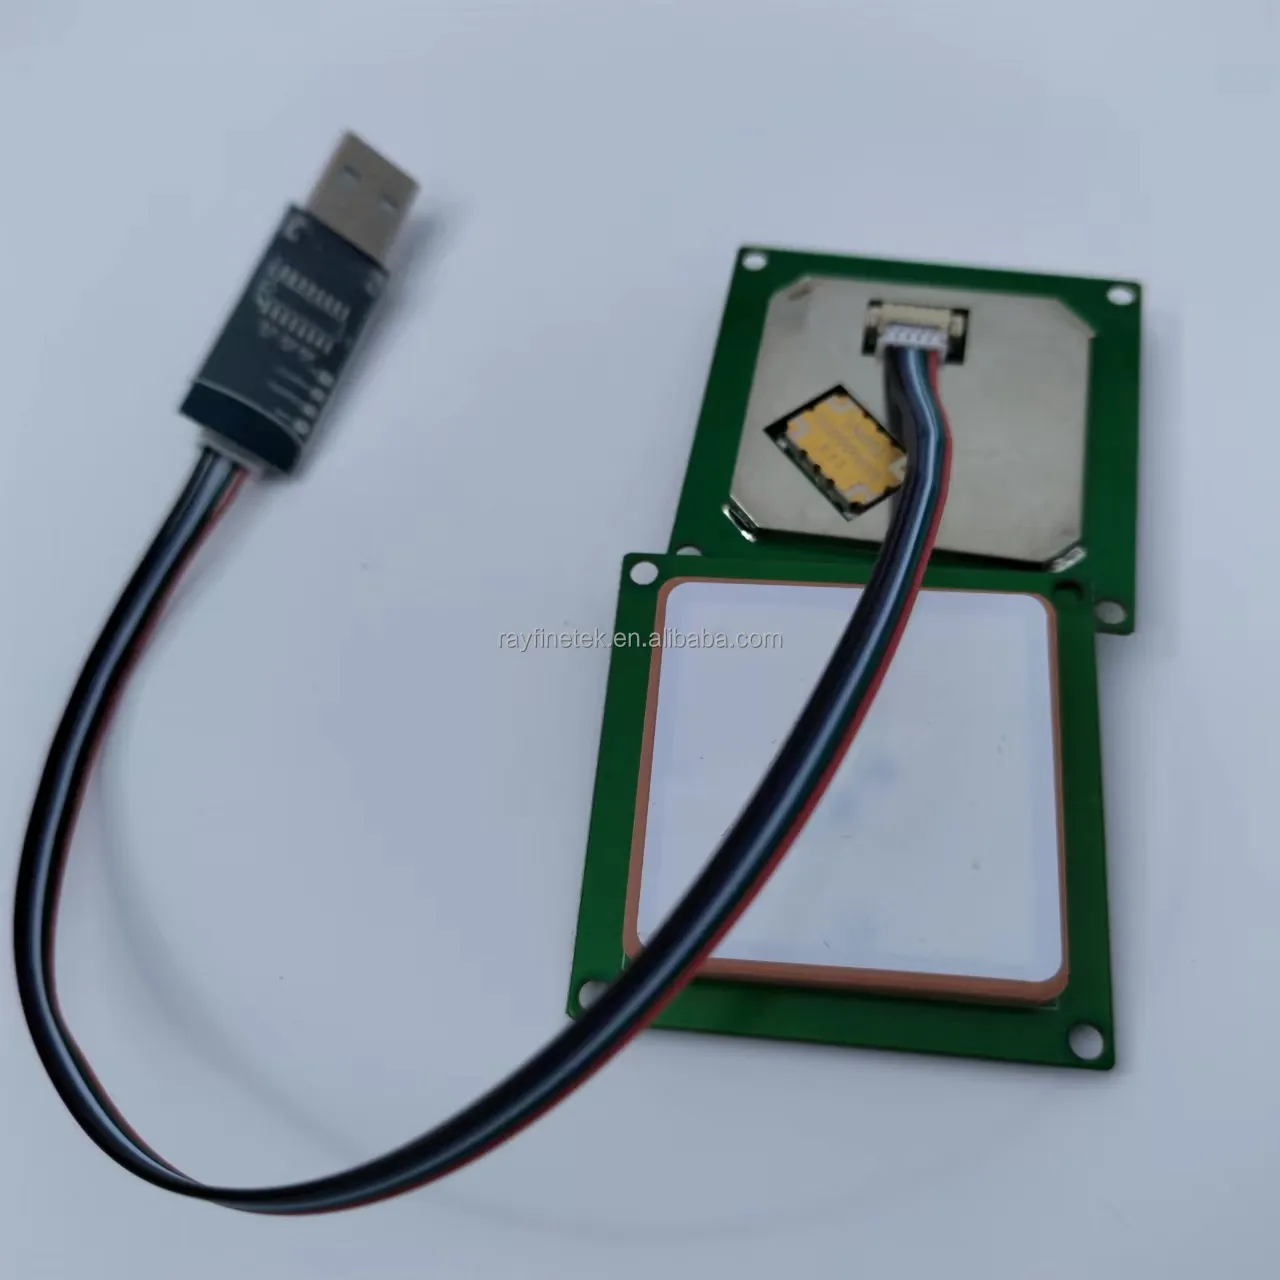 1 meter range RFID reader EPC gen2 840 to 960Mhz Module UHF RFID reader